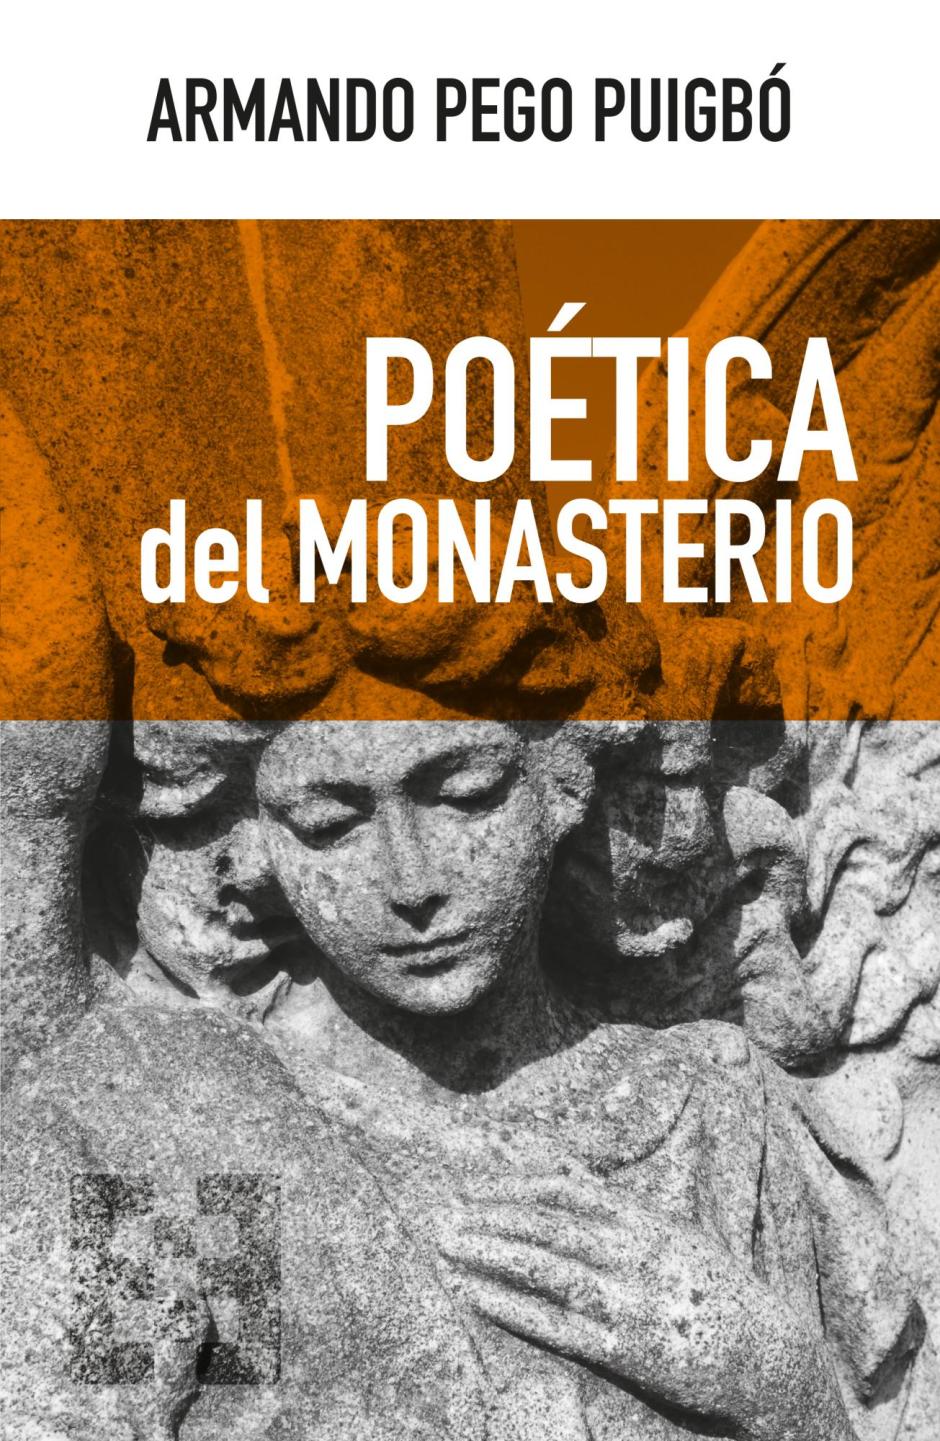 Portada de «Poética del monasterio» de Armando Pego